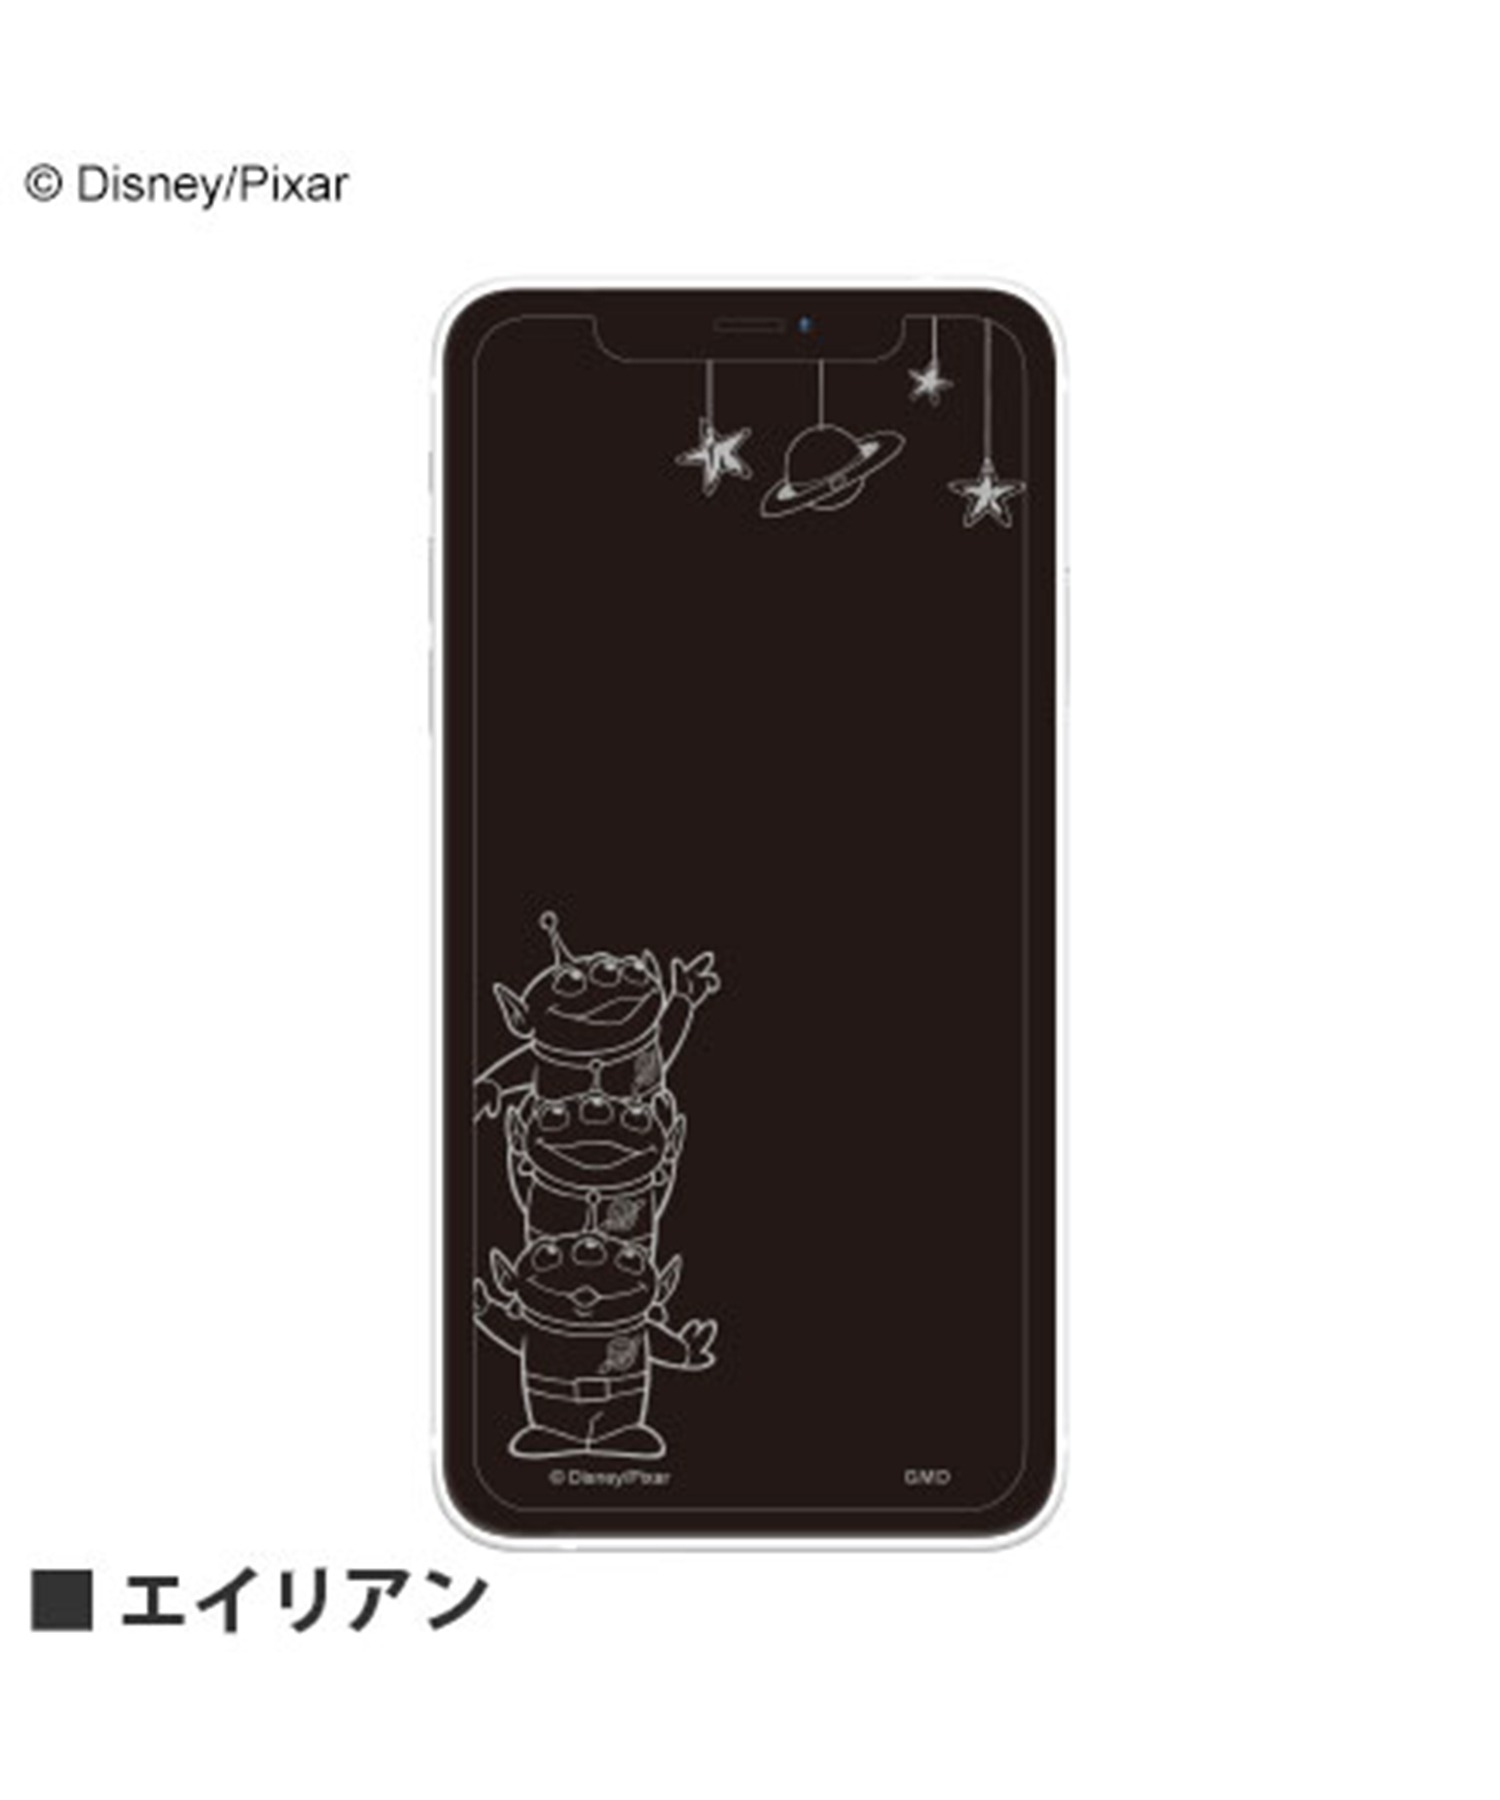 ディズニー 魅了 ピクサーキャラクター 高価値セリー iPhone12 Pro対応 12 ガラススクリーンプロテクター